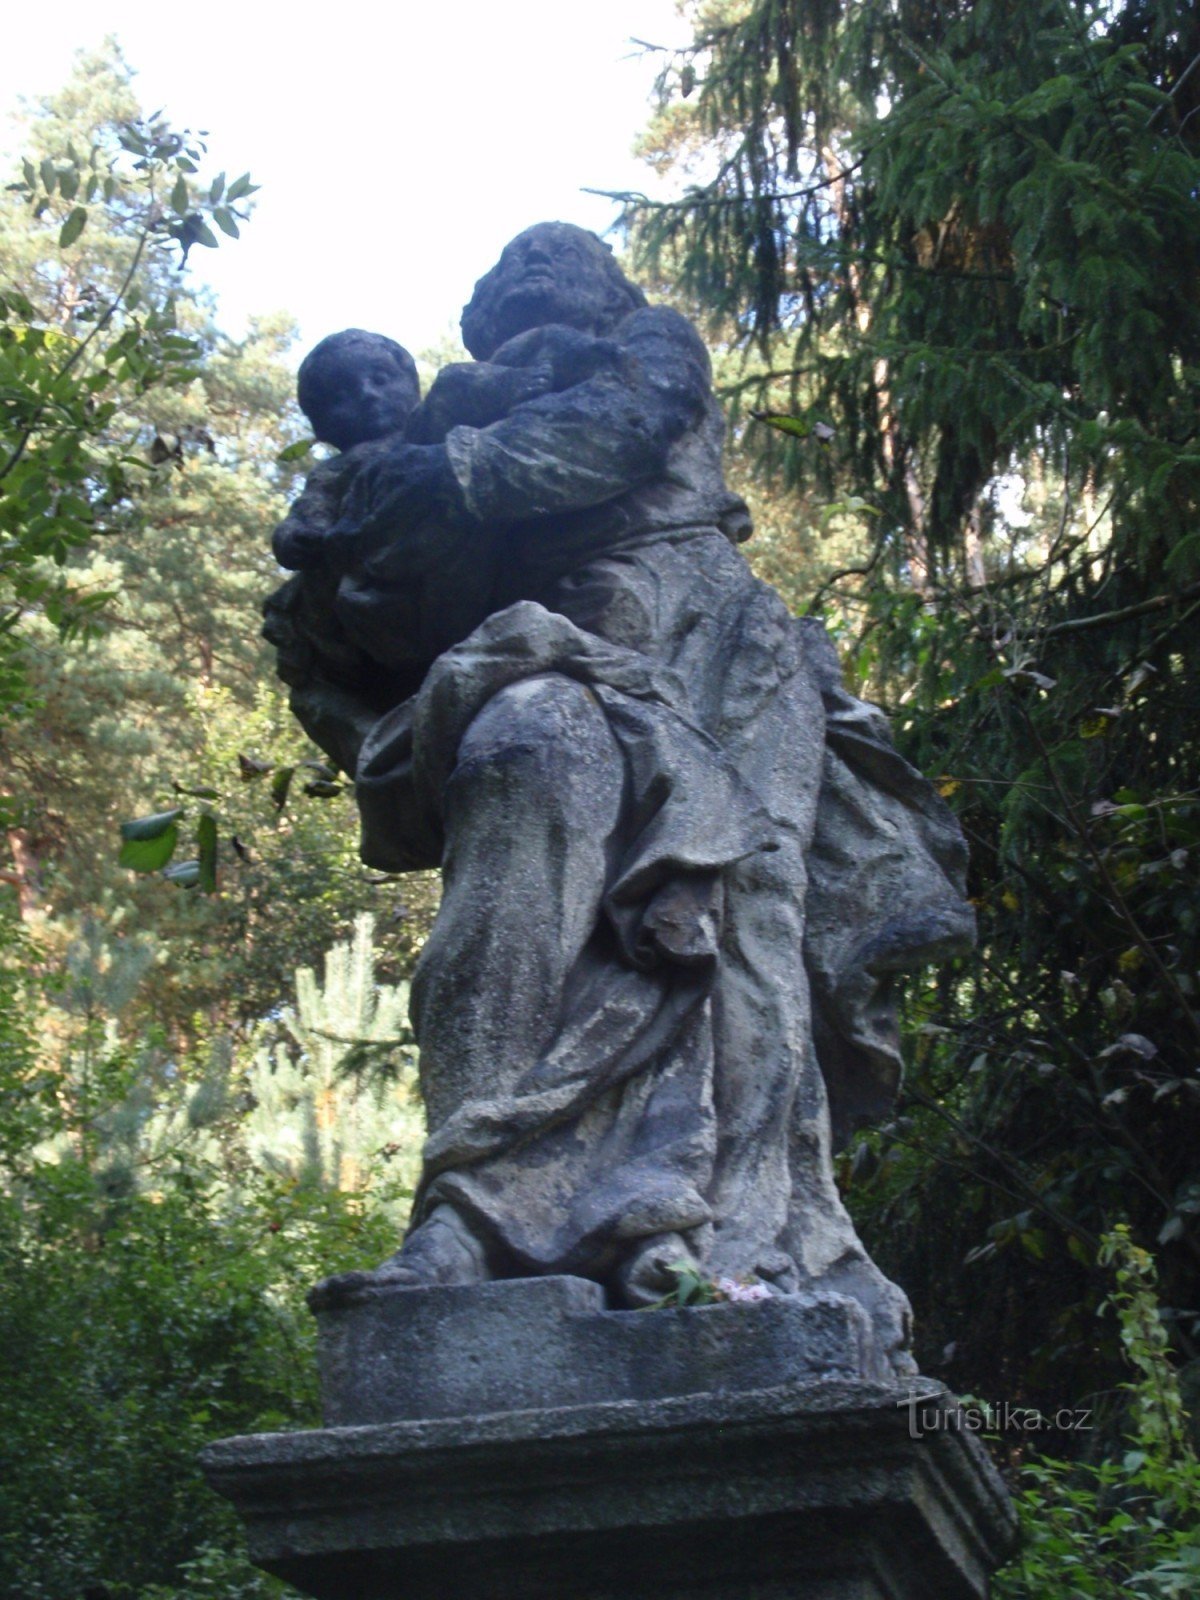 聖の像タソフ近くの幼子イエスとヨセフ